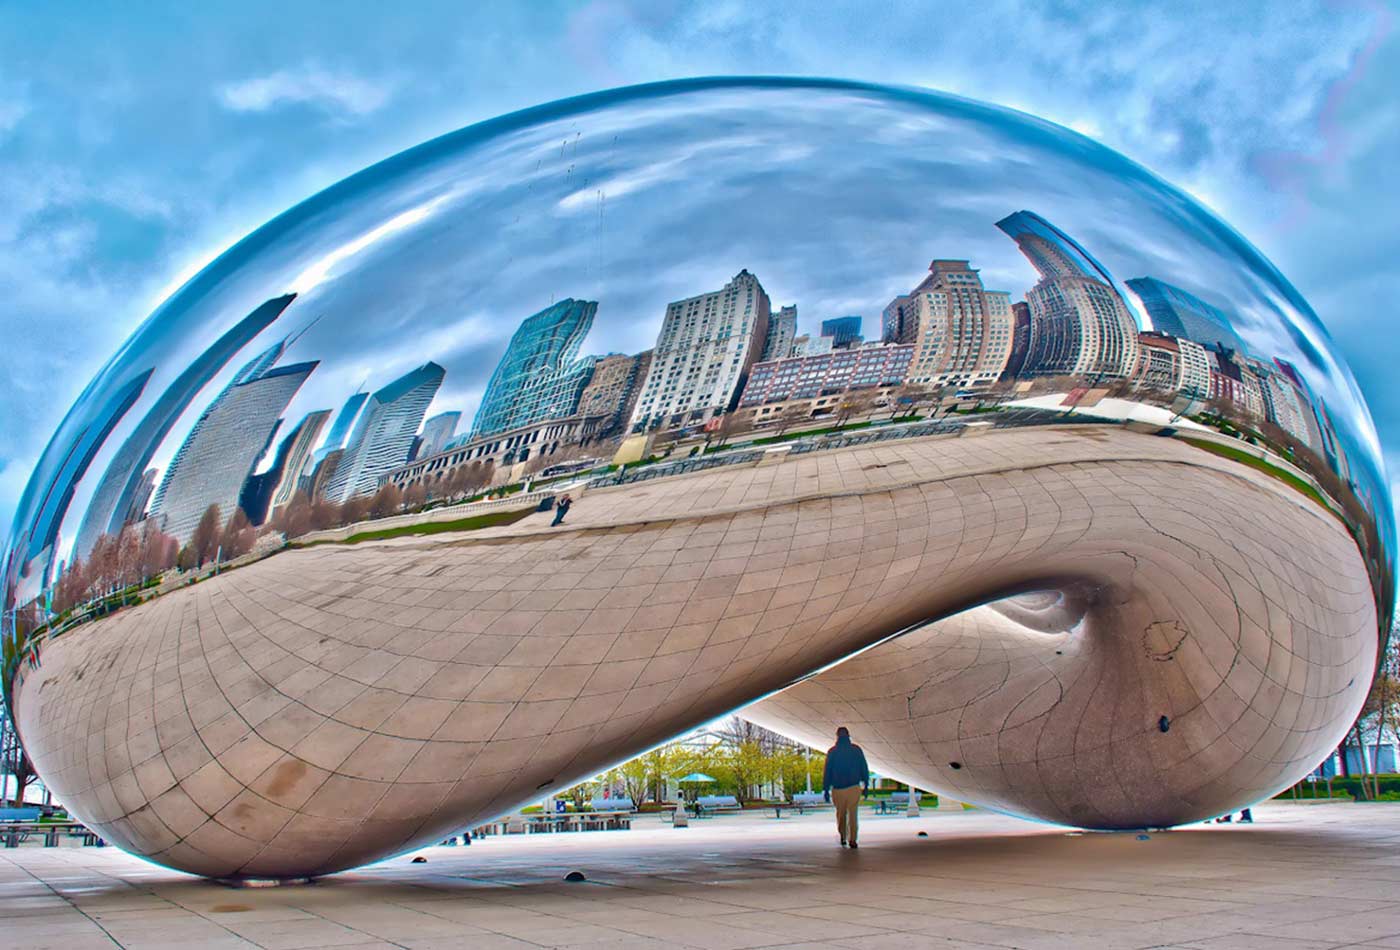 Cloud Gate sculpture in Chicago.